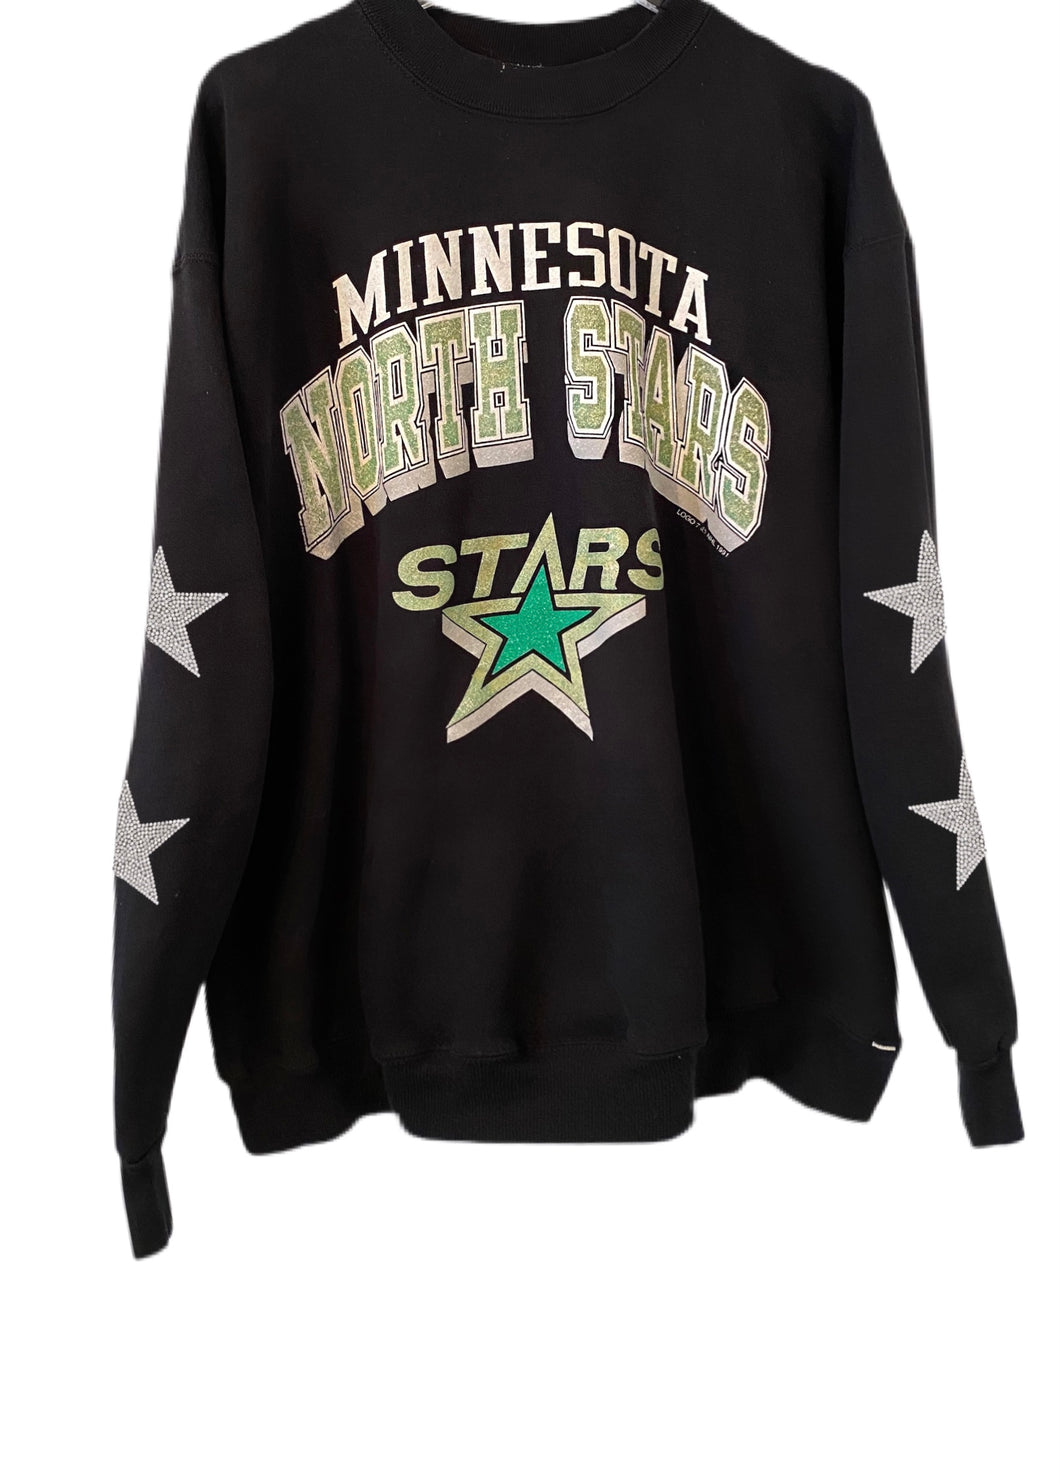 Minnesota North Stars, NHL One of a KIND Vintage Sweatshirt with Crystal Stars Design